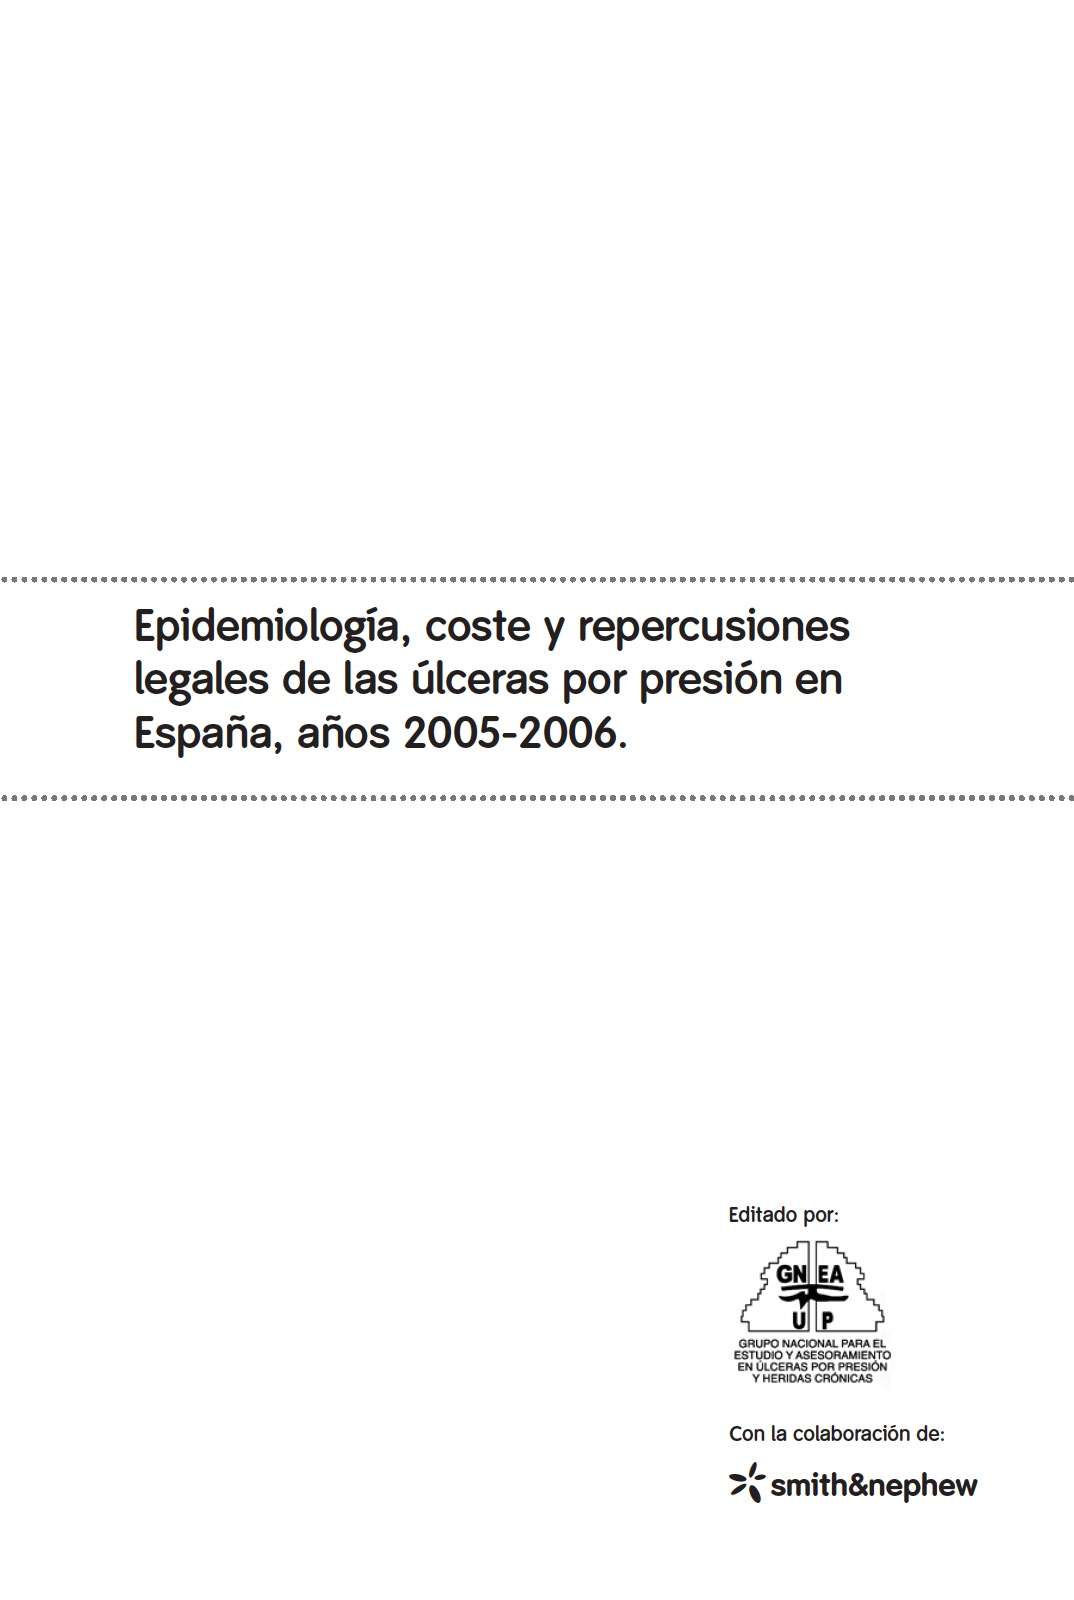 UPP: epidemiología, coste y repercusiones legales